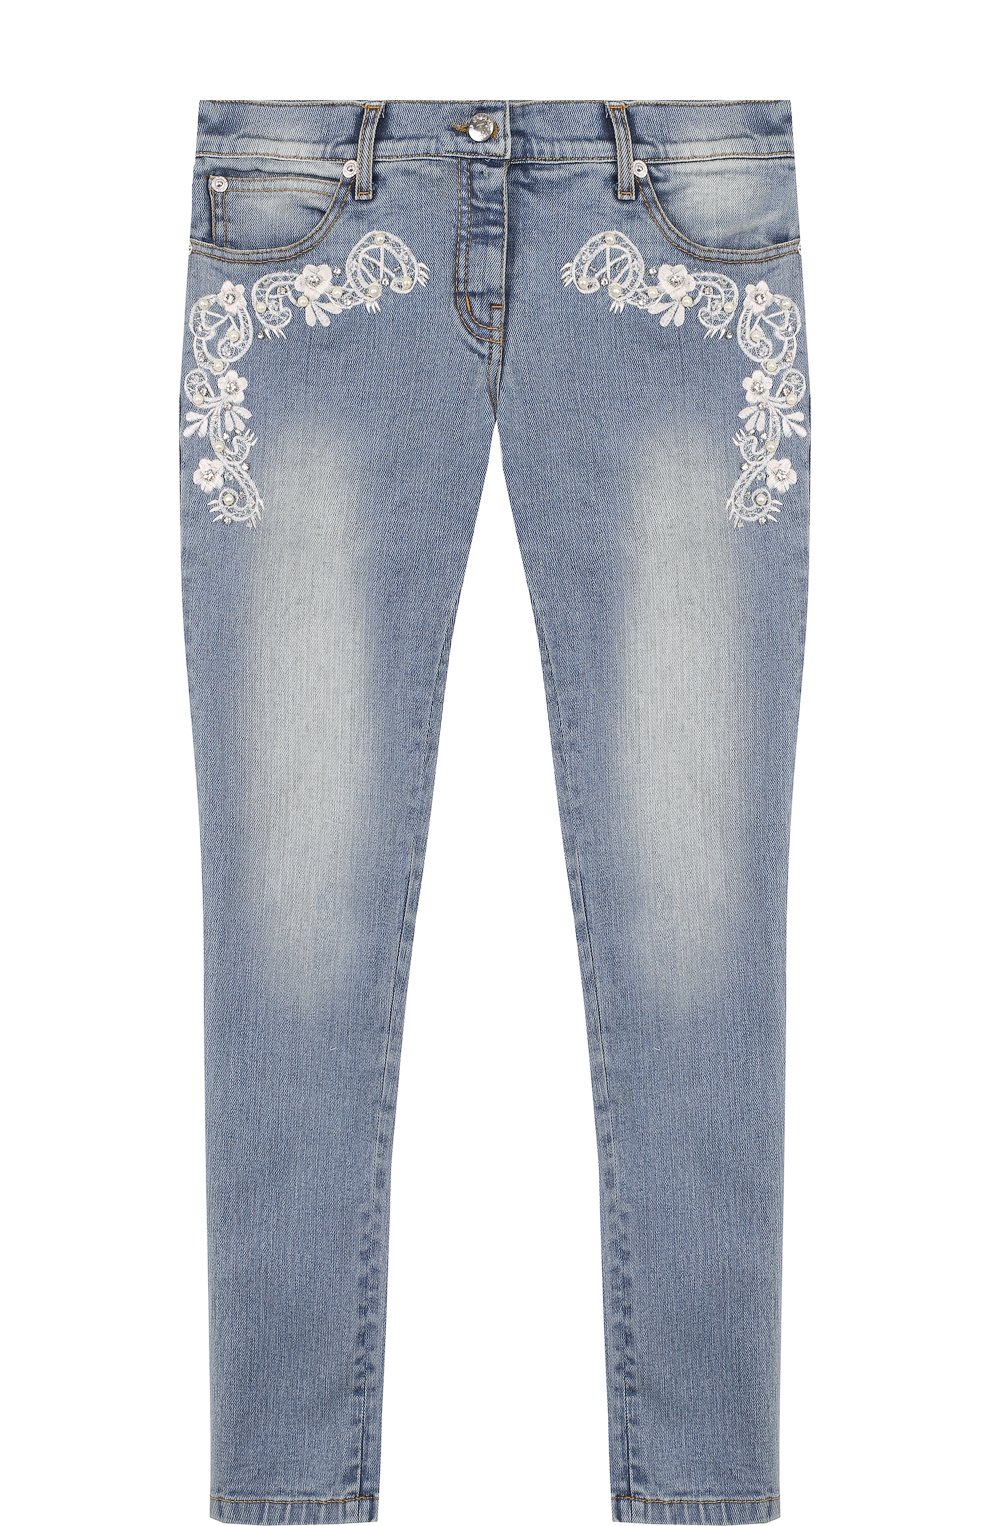 Женские узкие джинсы — купить в интернет-магазине Ламода